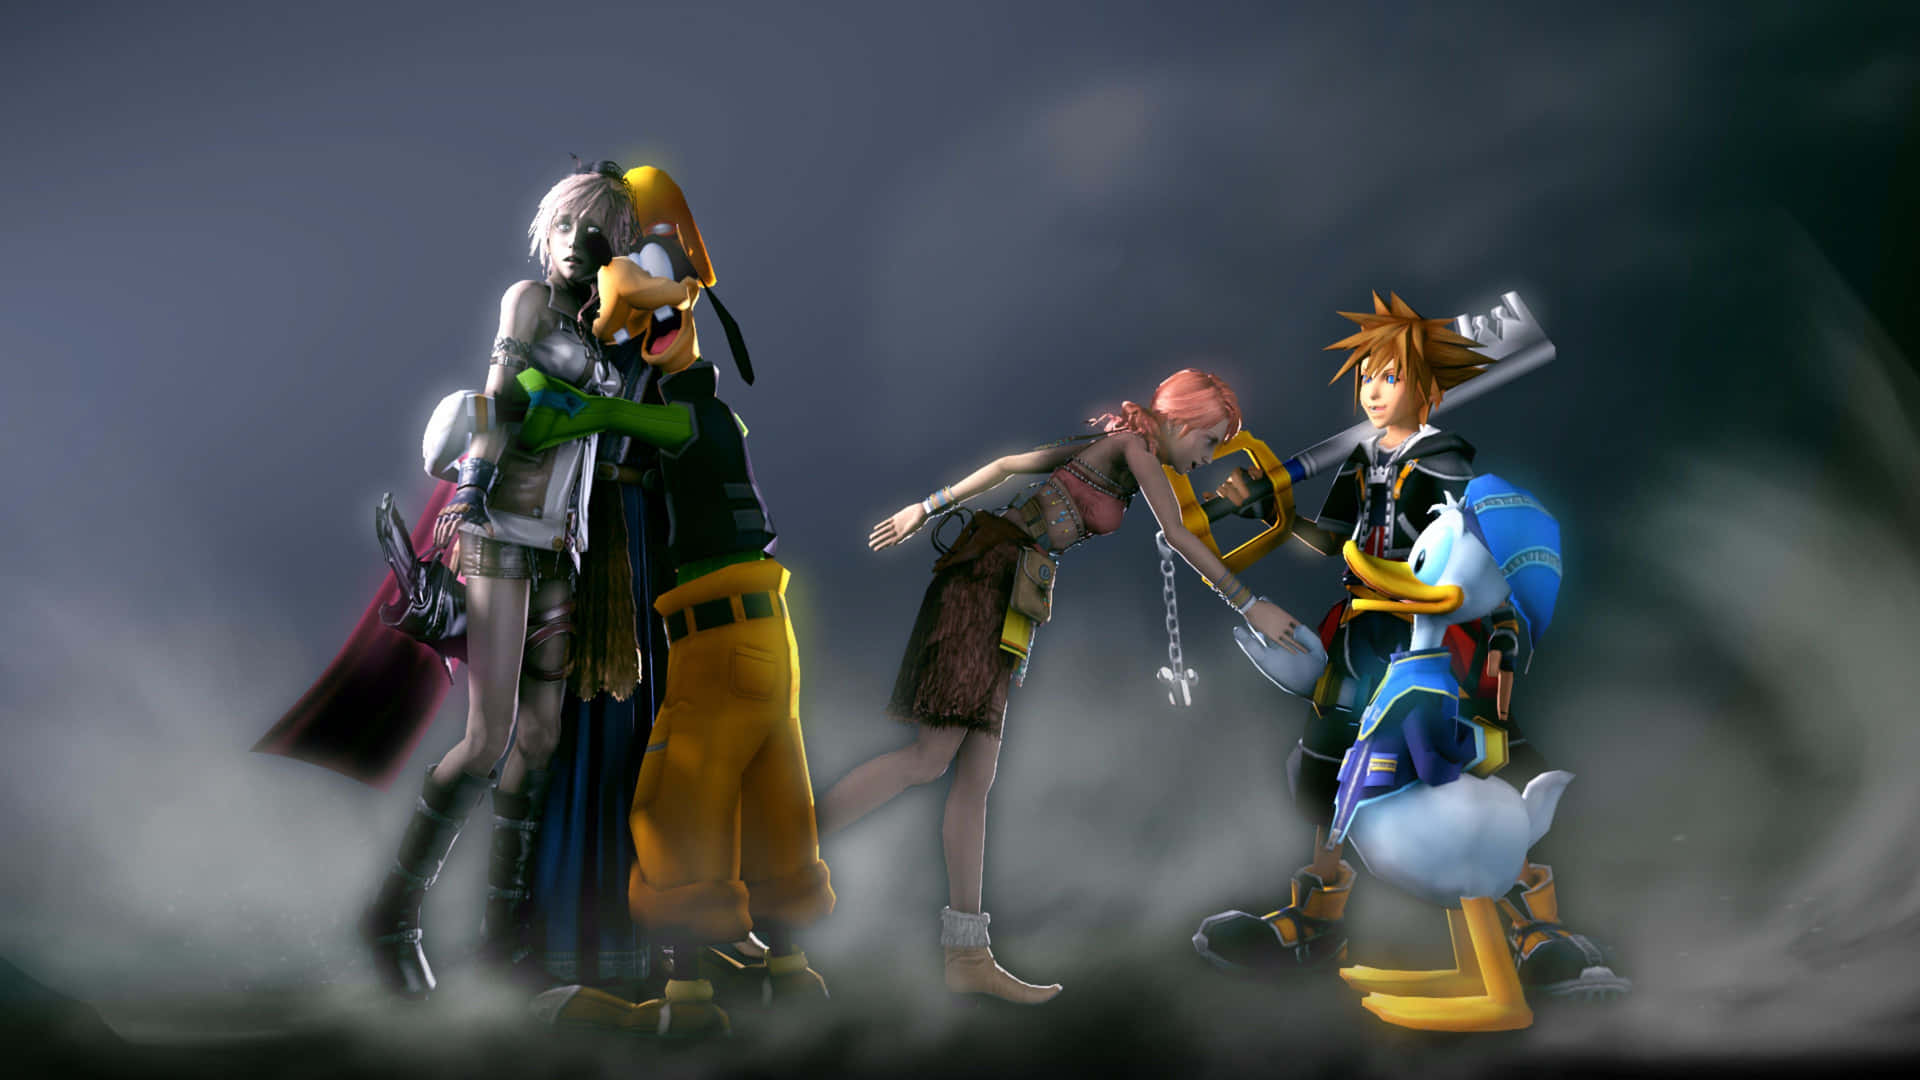 Caption: Heroic Triumph in Kingdom Hearts Universe